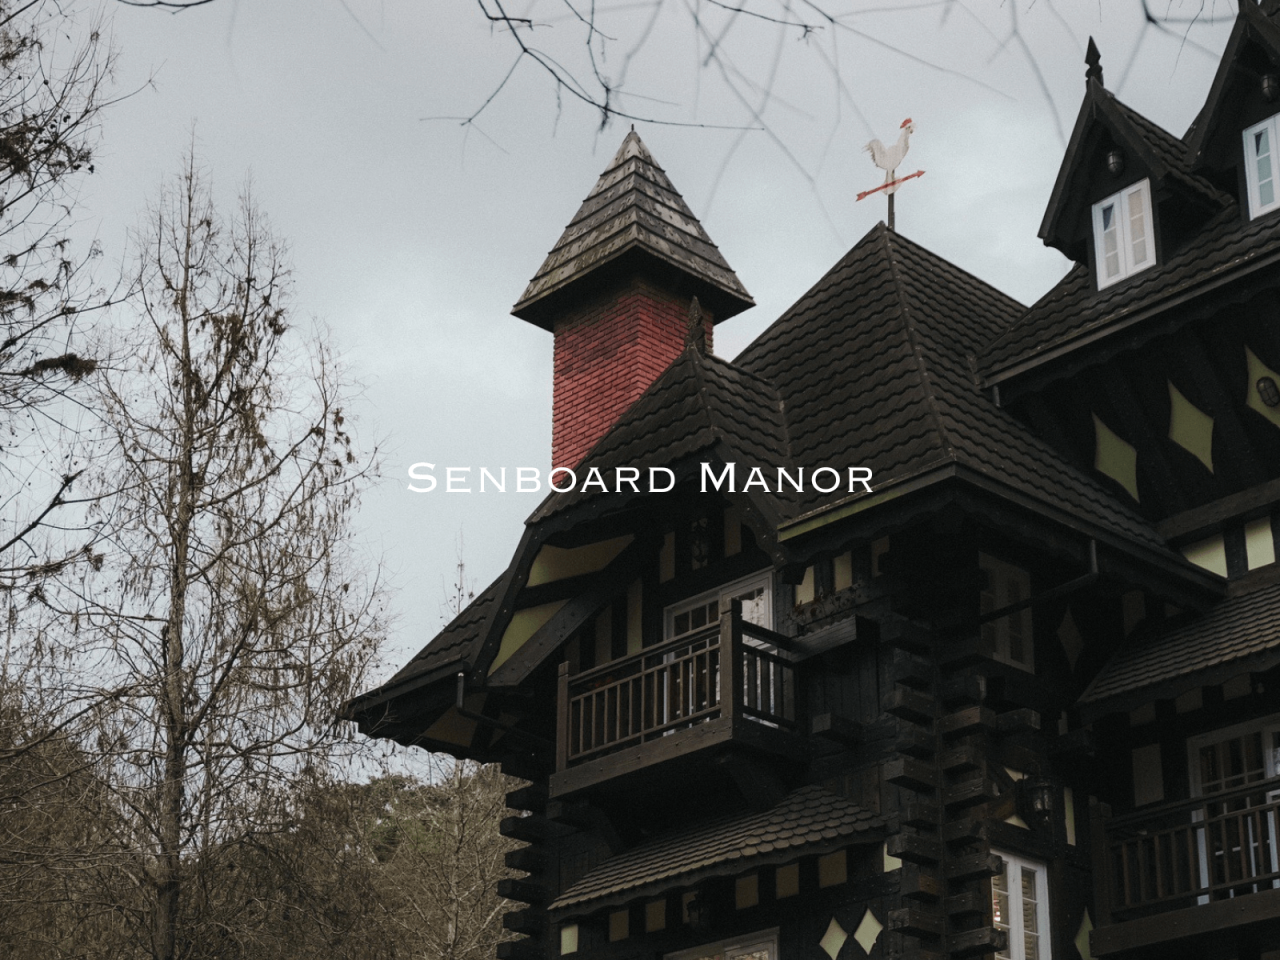 Senboard Manor nantou 01